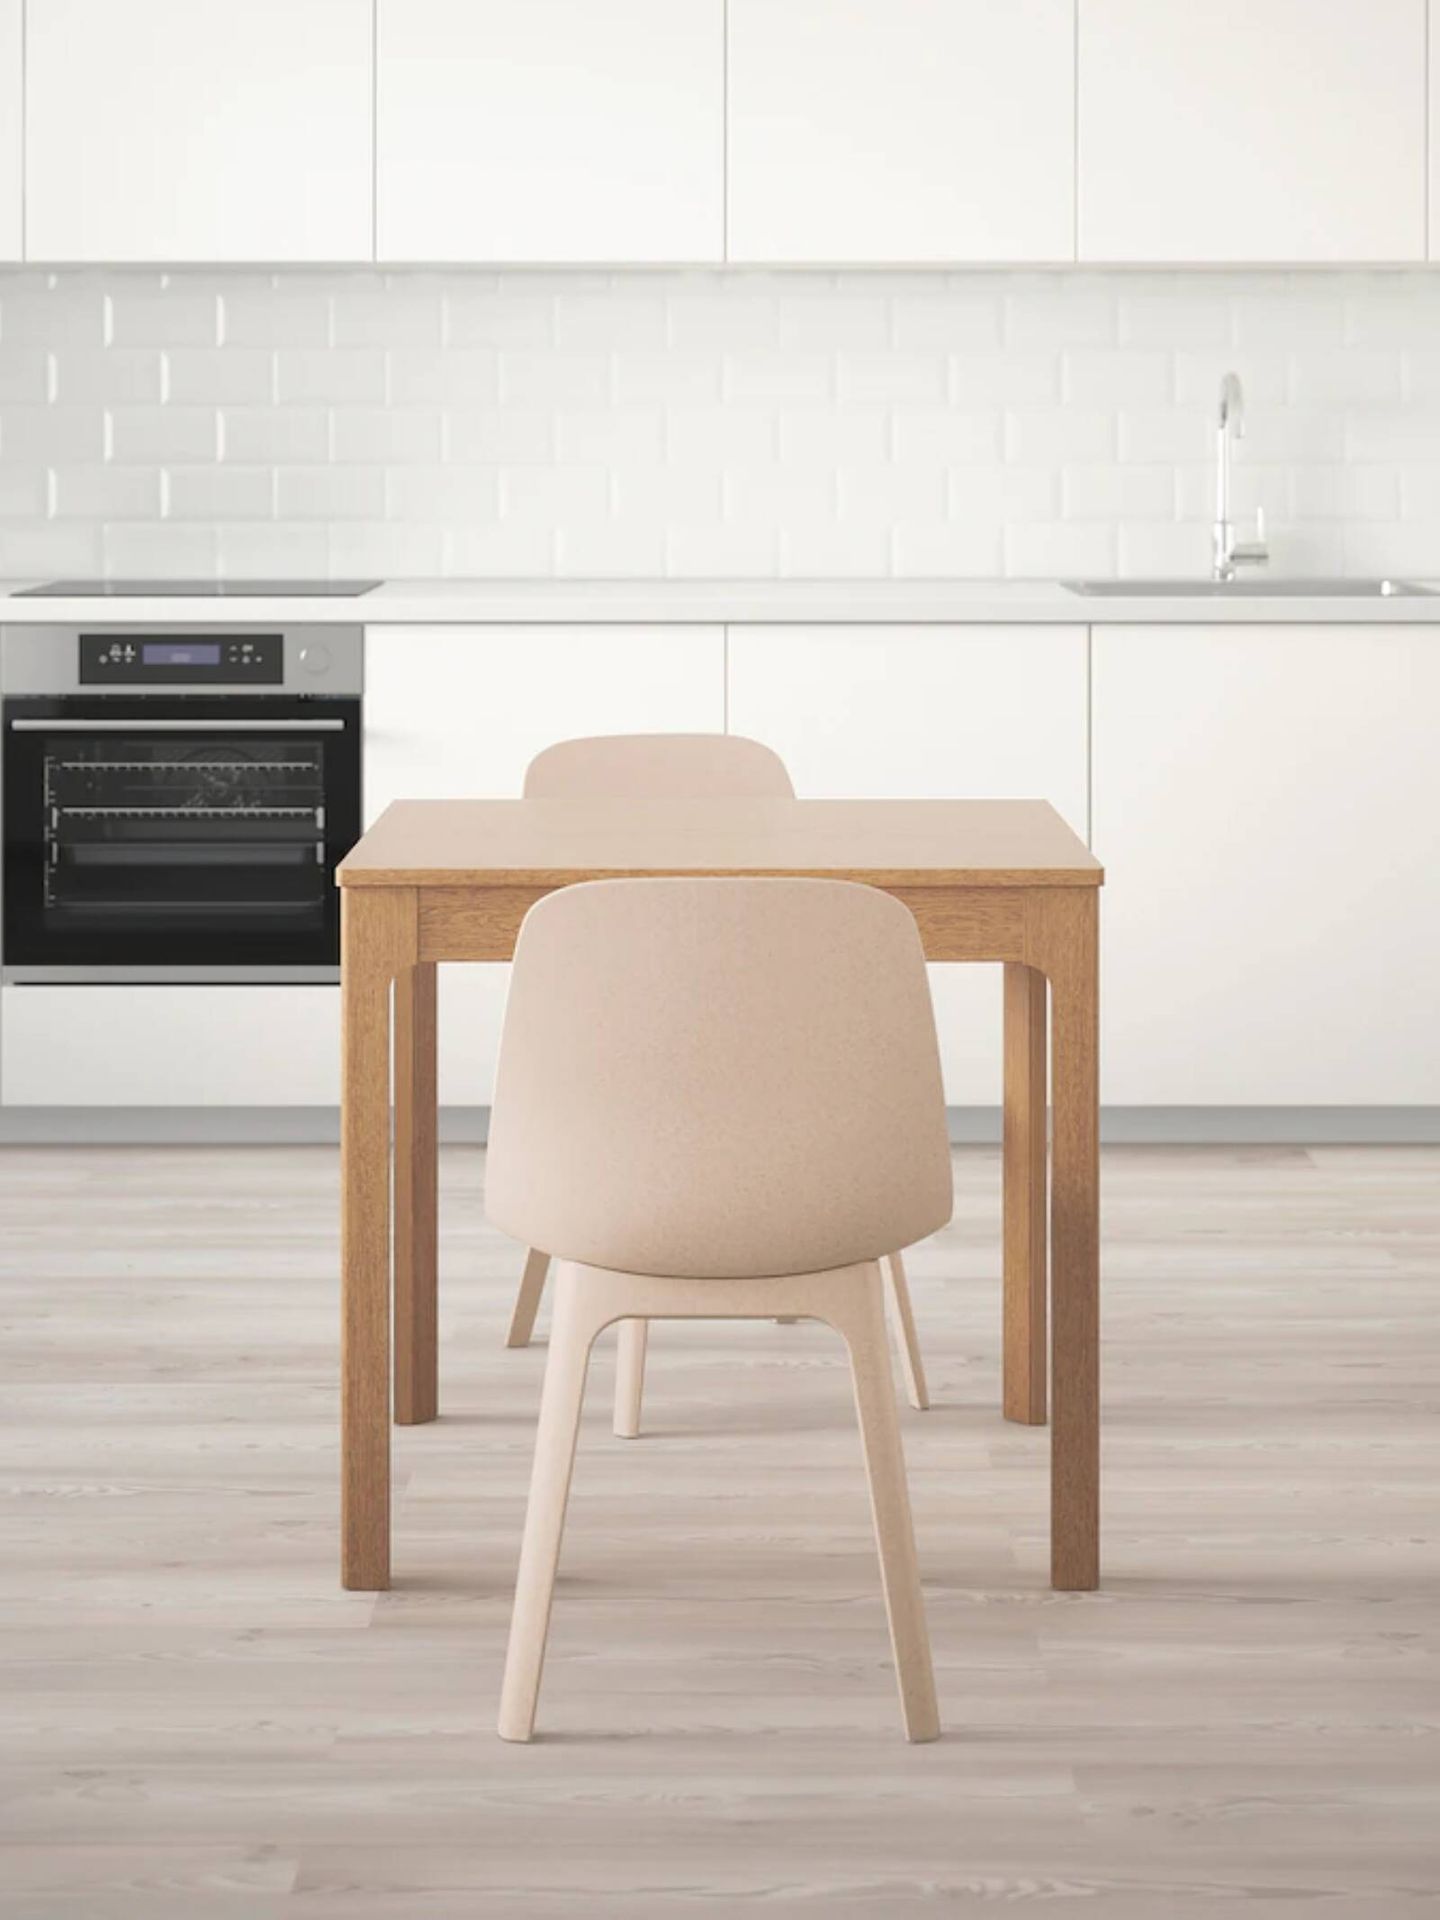 Mesa de comedor de Ikea, el mueble ideal para casas pequeñas. (Cortesía)